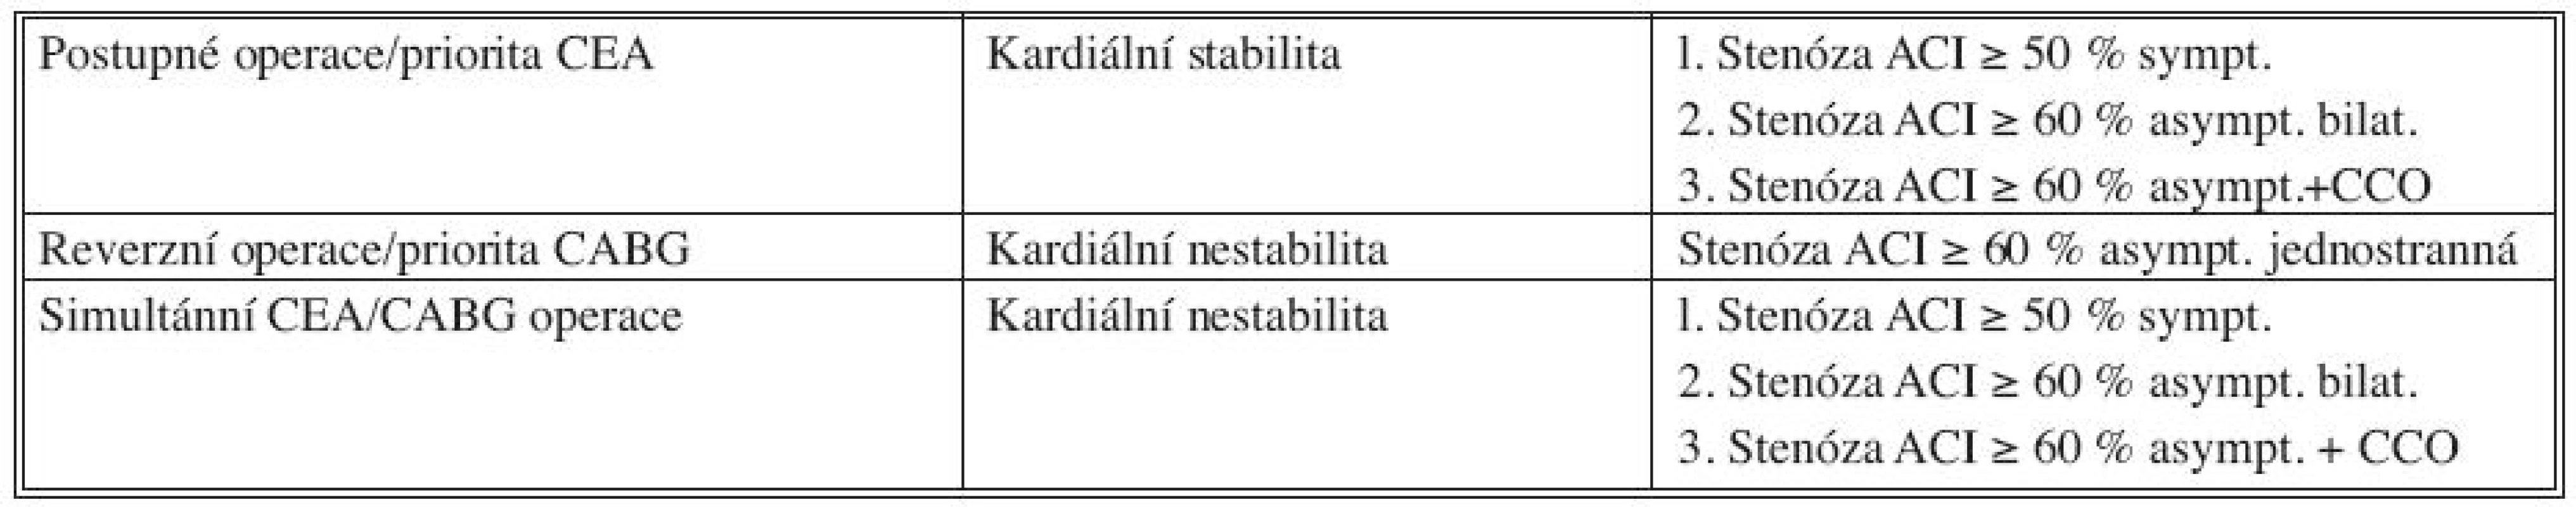 Naše strategie operací karotické a koronární revaskularizace
Tab. 3. The authors’ strategy in carotid and coronary revascularization procedures